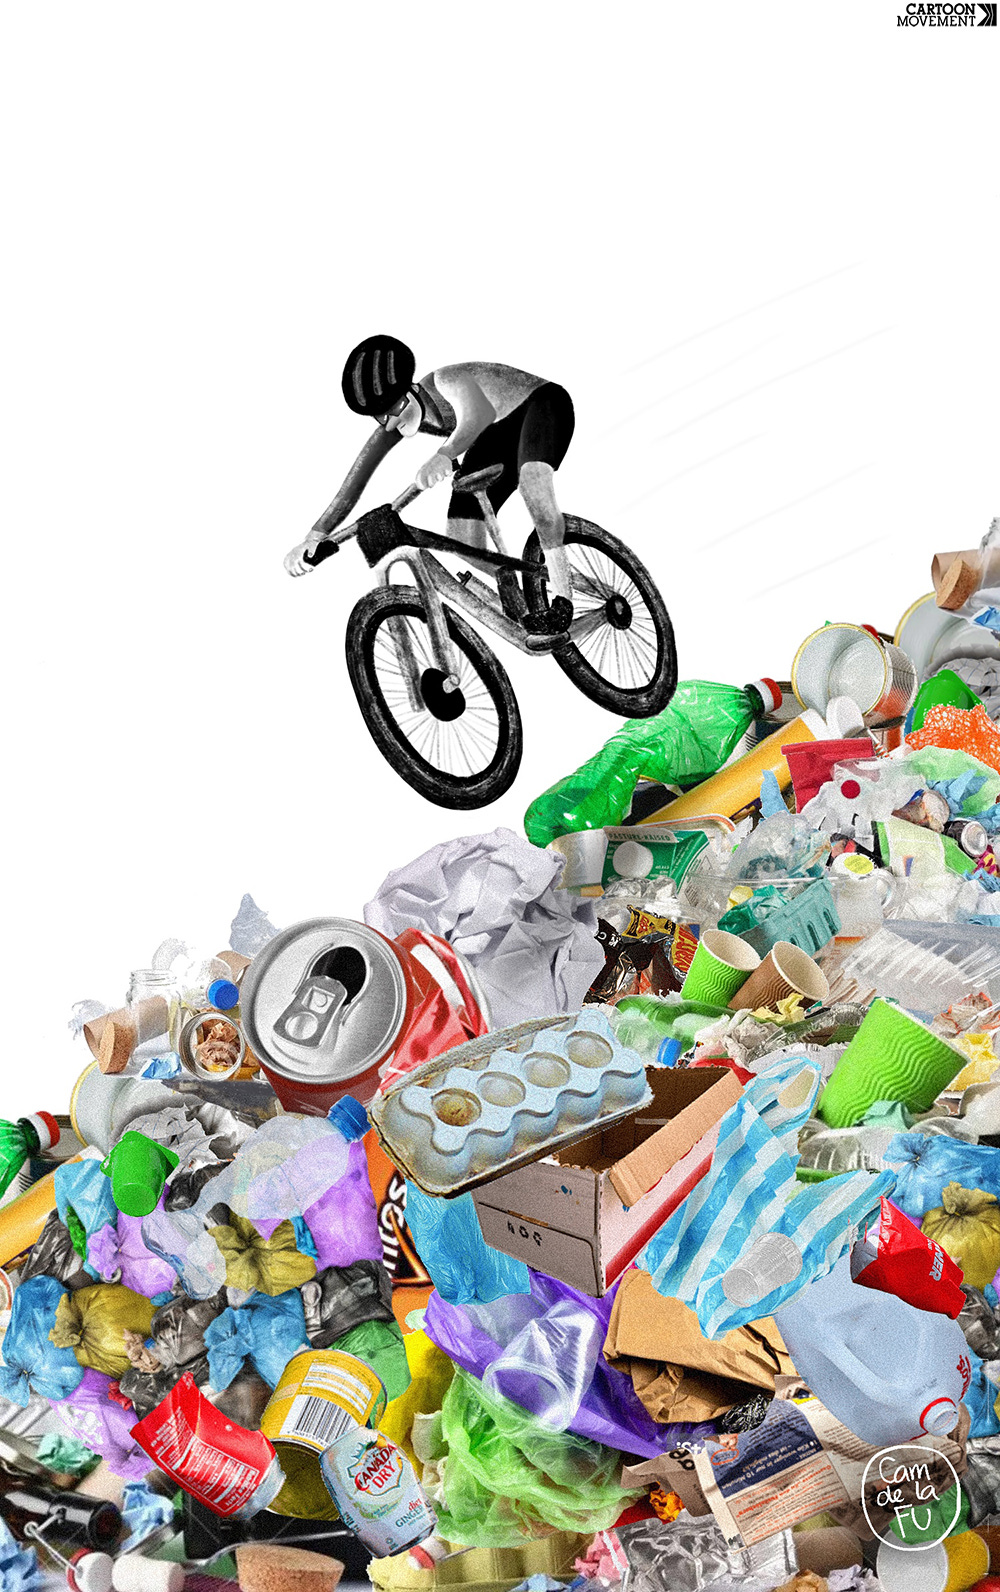 Cartoon showing a mountain bike navigating a mountain of trash.